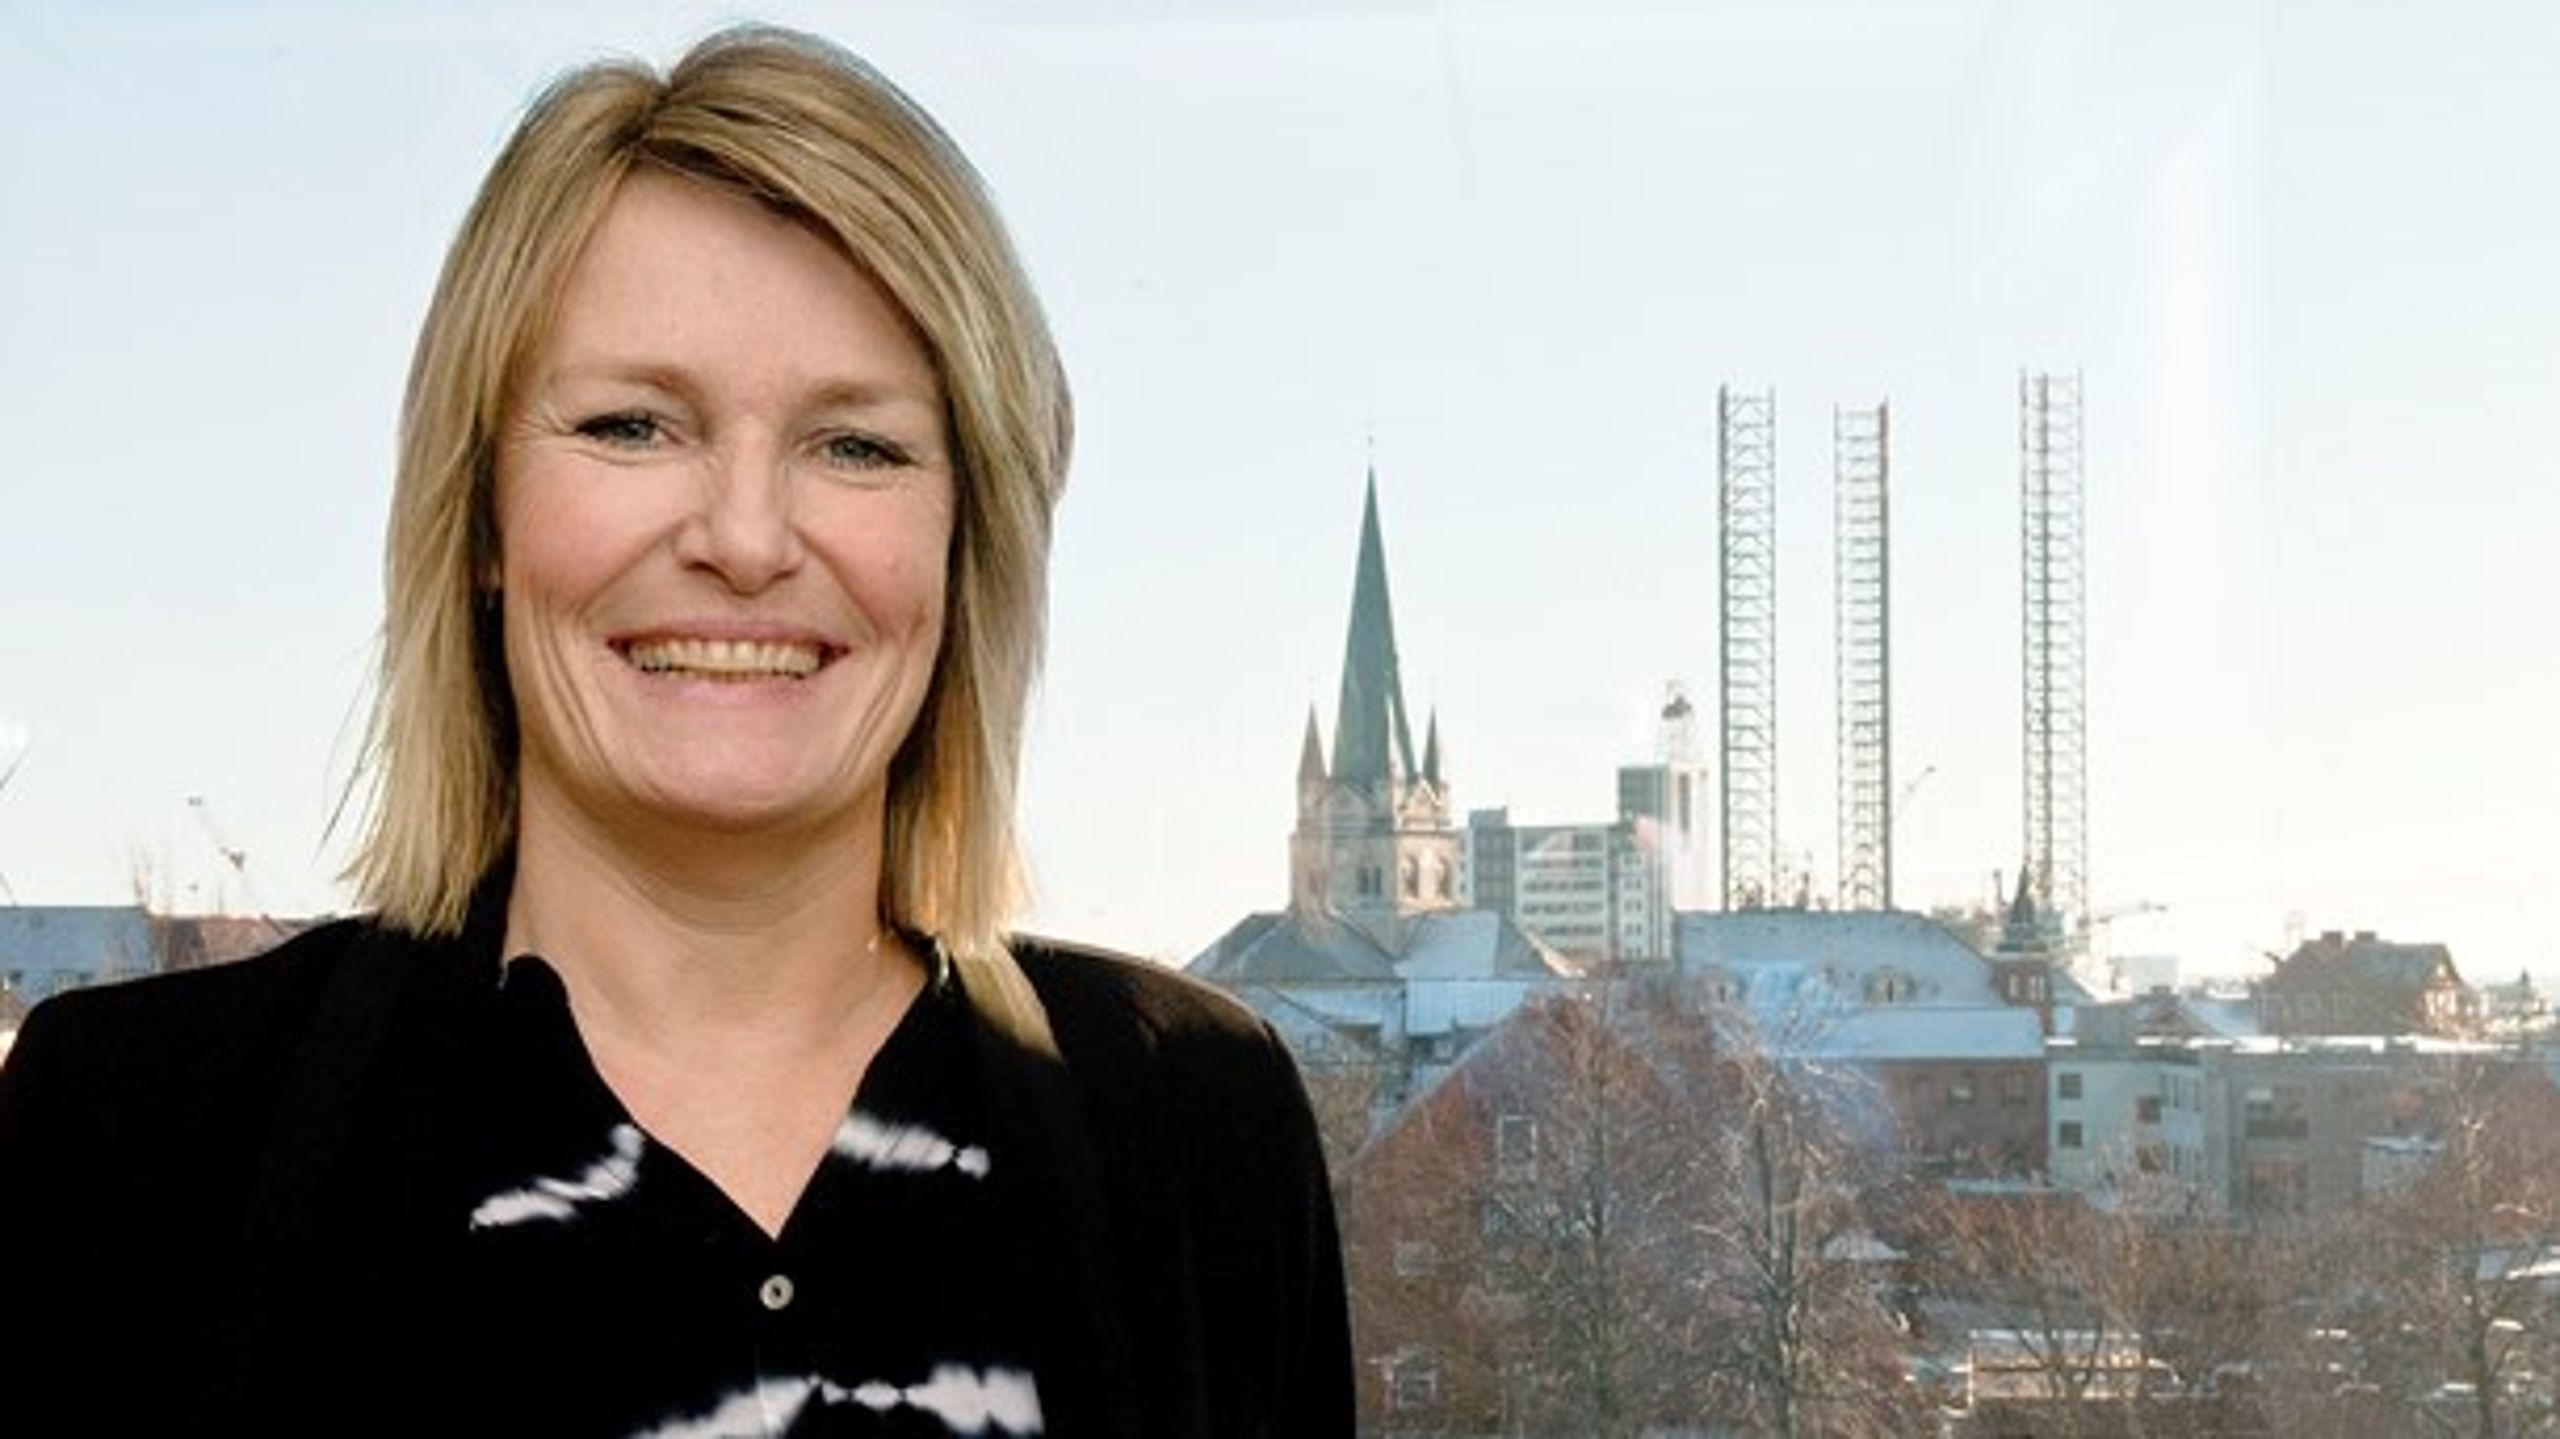 "Tak for ældremilliard og værdighedsmilliard. Nu er der brug for børnemilliard," skriver Frederikshavns borgmester, Birgit S. Hansen (S).